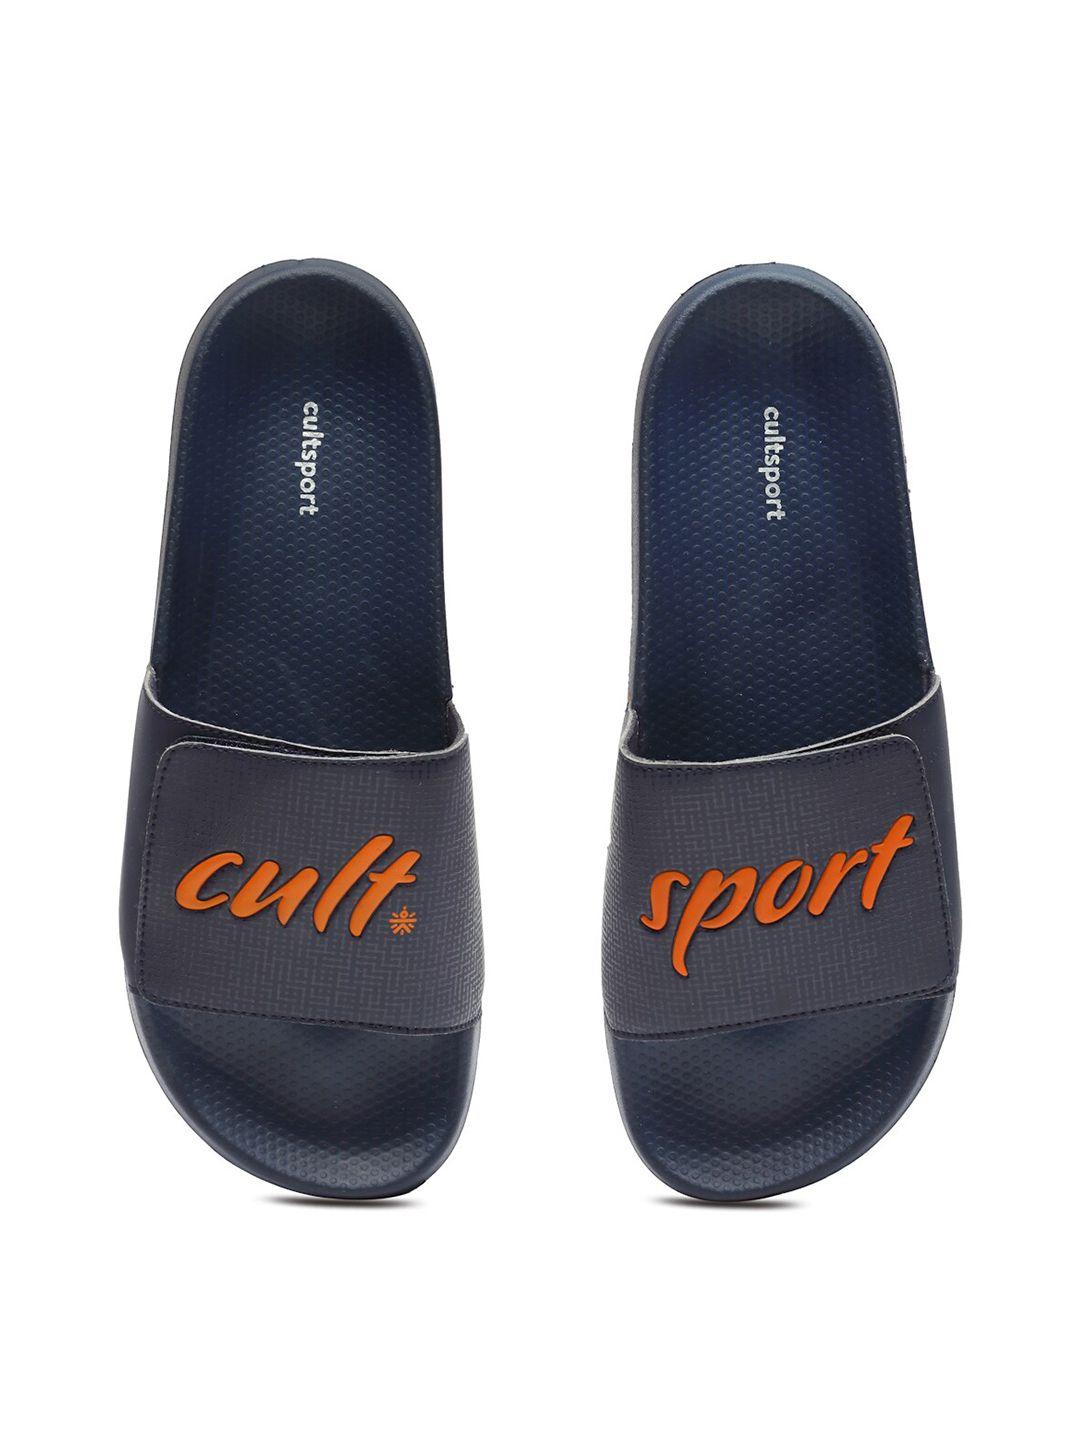 cultsport men navy blue flip flops